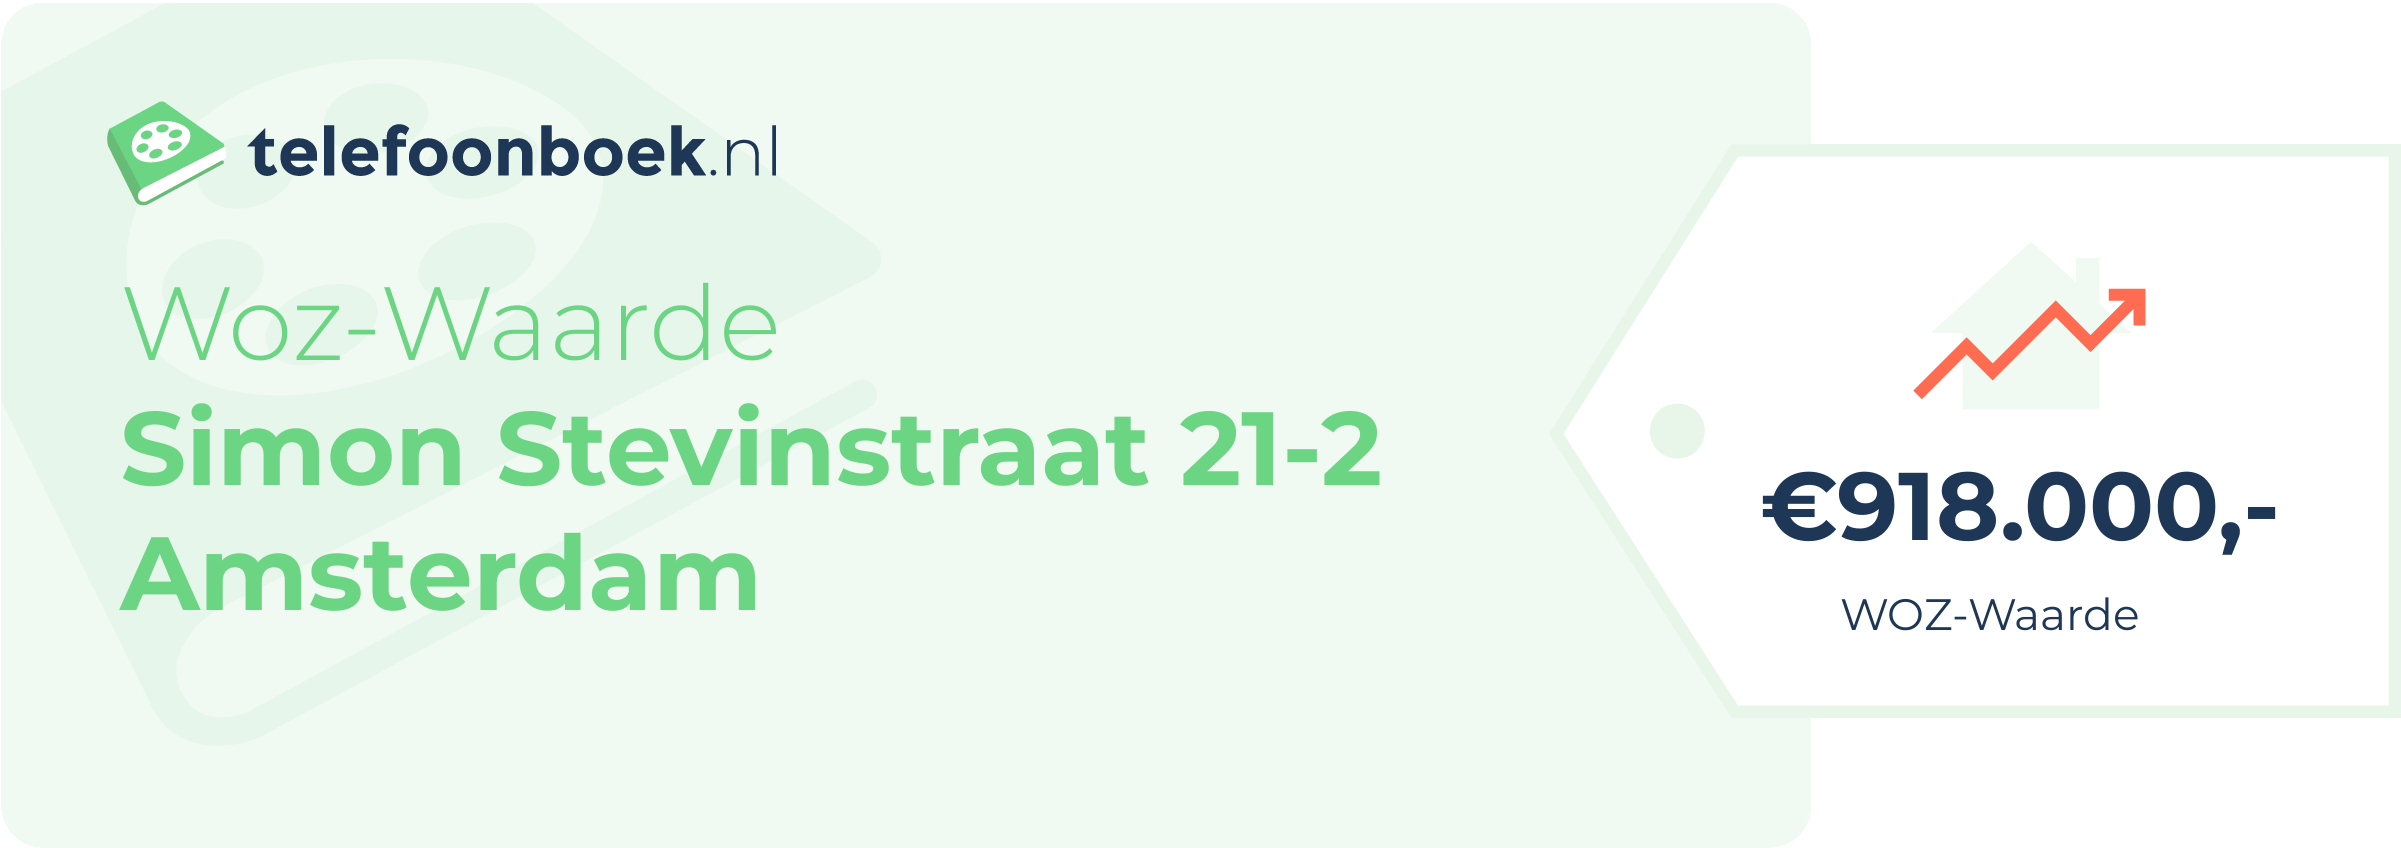 WOZ-waarde Simon Stevinstraat 21-2 Amsterdam